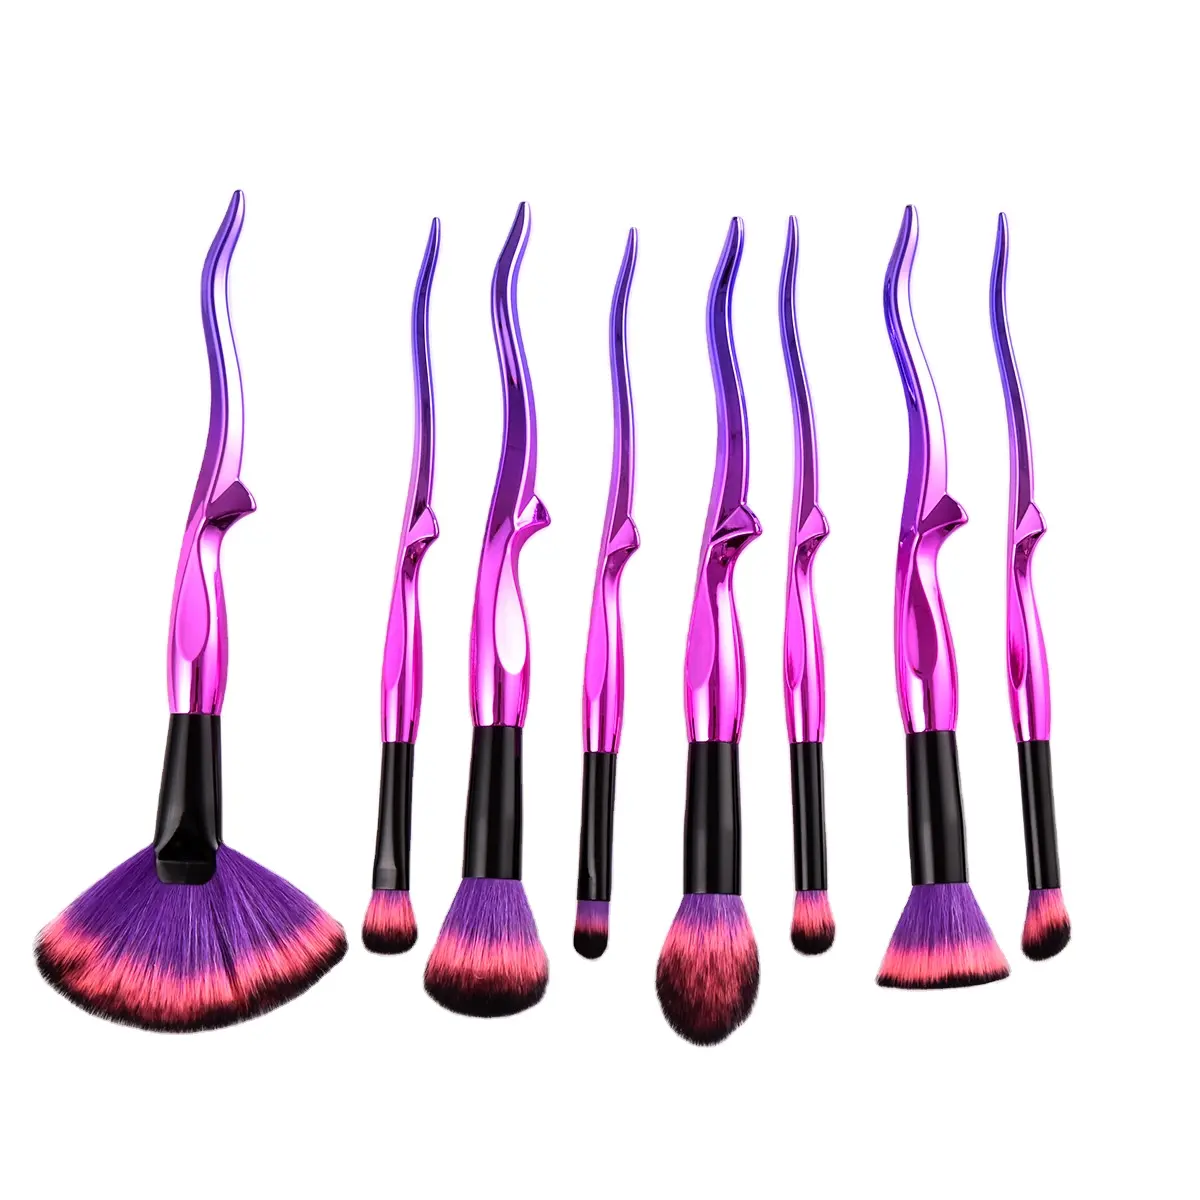 Plating Handle Makeup Brush Set Wholesale For Wholesales Powder Eye Shadow Blush Contour Makeup Brushes Set Crystal Makeup Brush